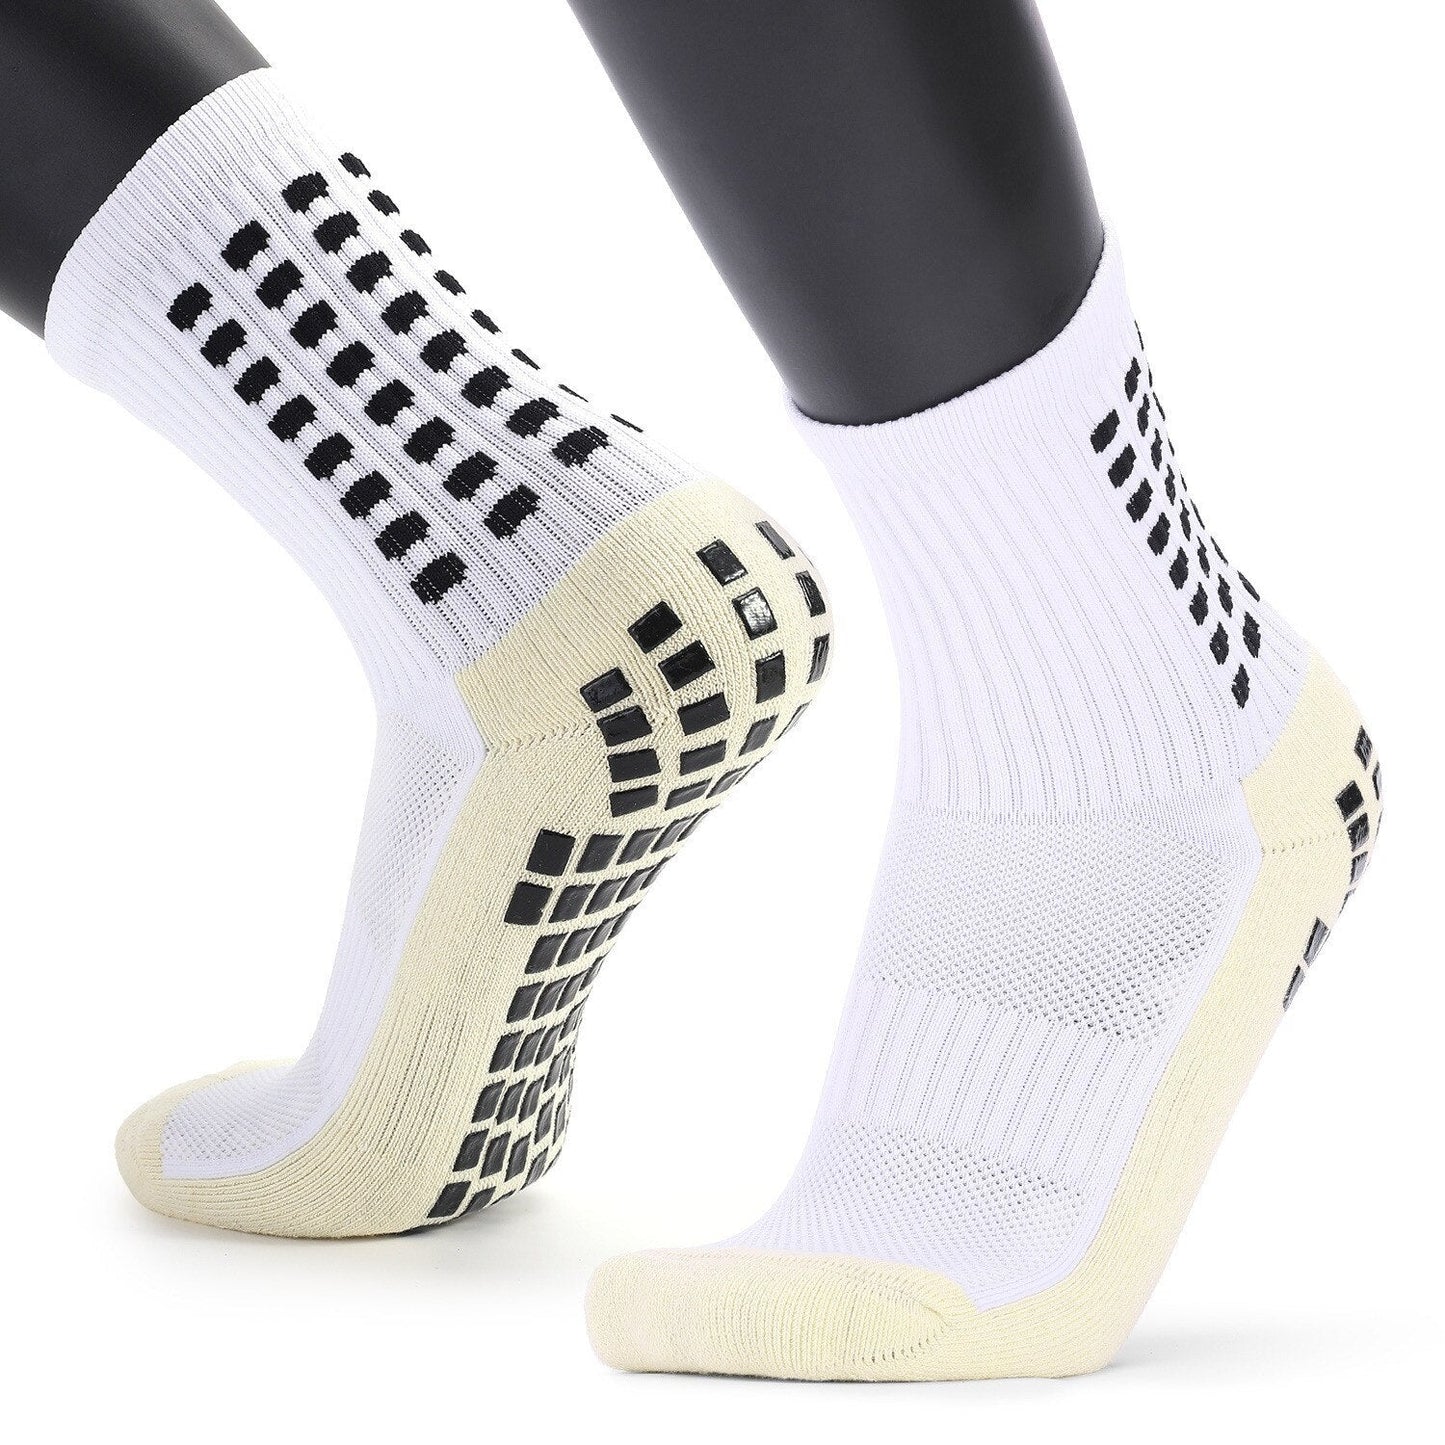 Premium Non-Slip Socks